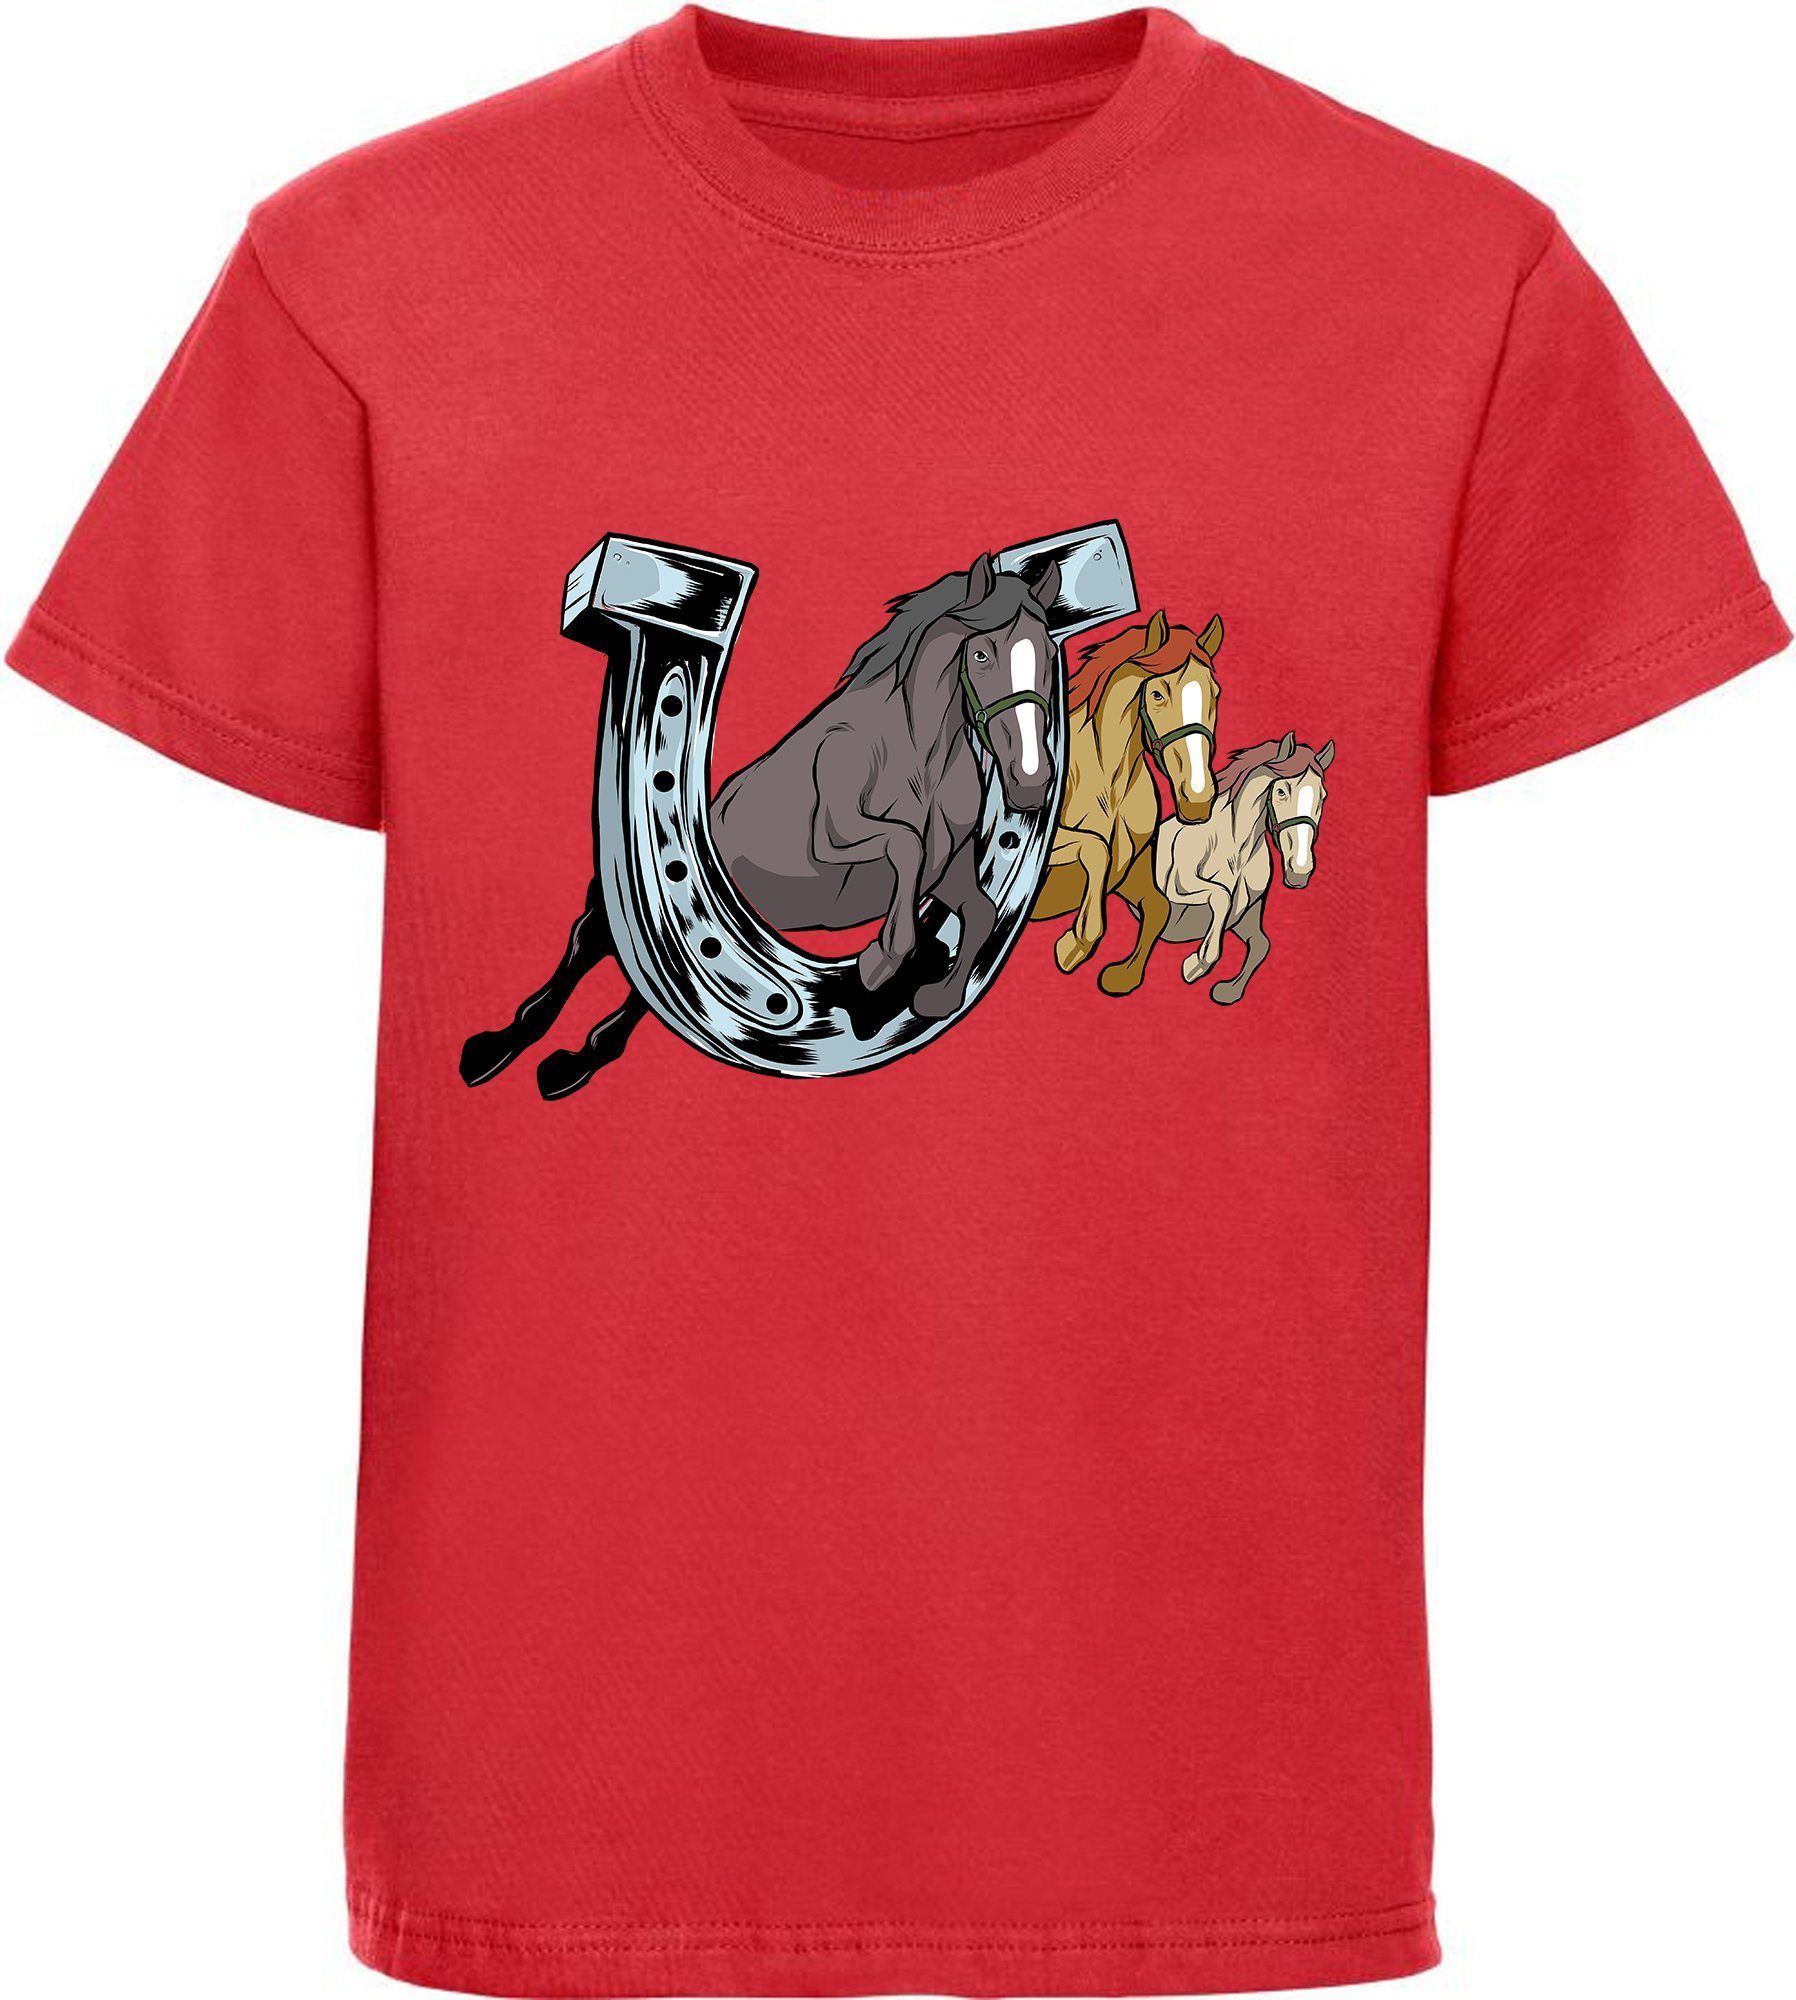 MyDesign24 Print-Shirt bedrucktes Mädchen T-Shirt drei springende Pferde durch ein Hufeisen Baumwollshirt mit Aufdruck, i145 rot